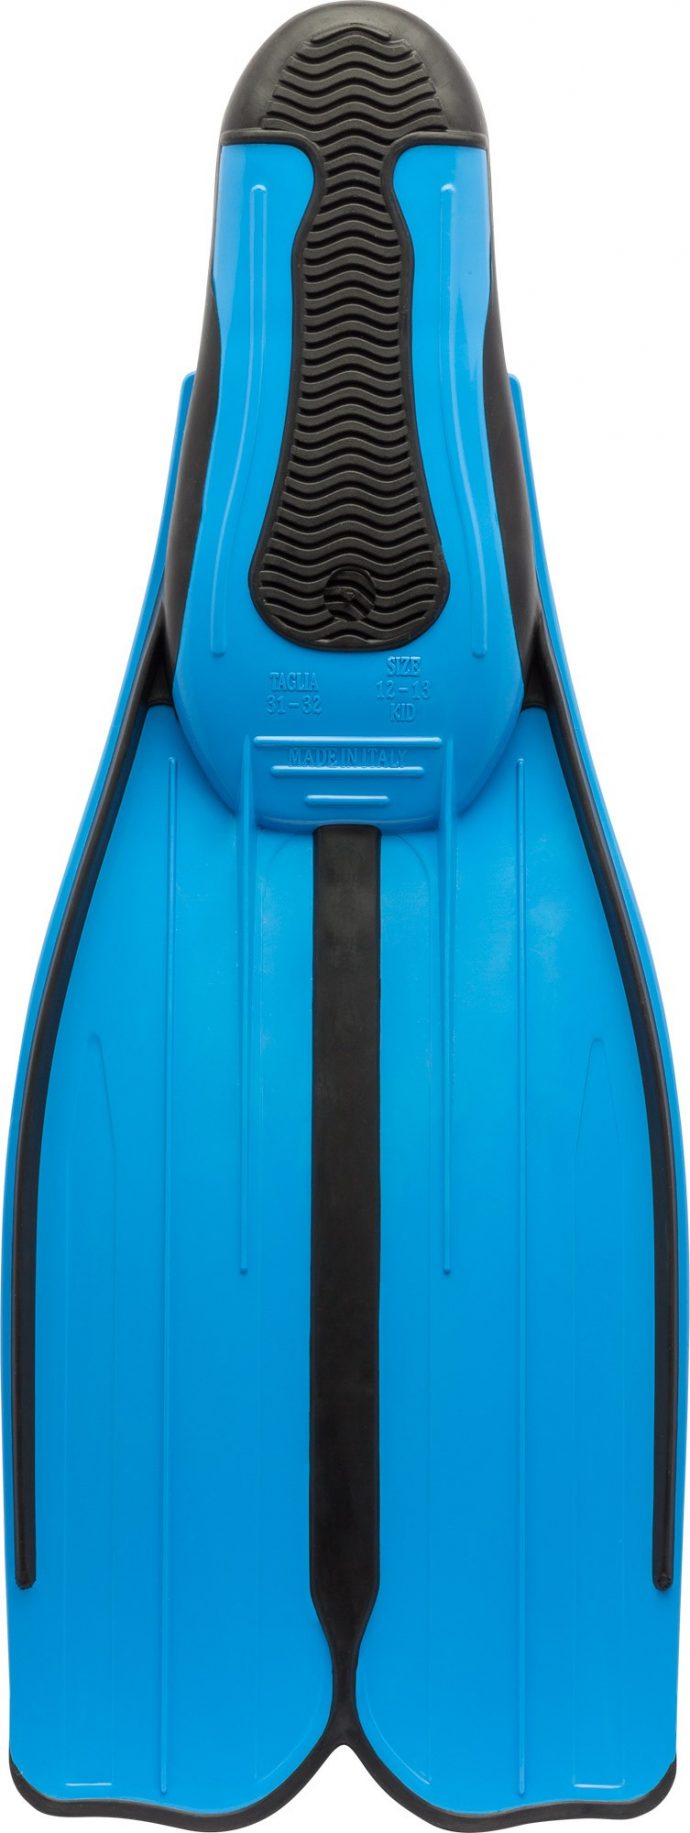 new CRESSI TAGLIA (made in Italy) swim fins, black M-L